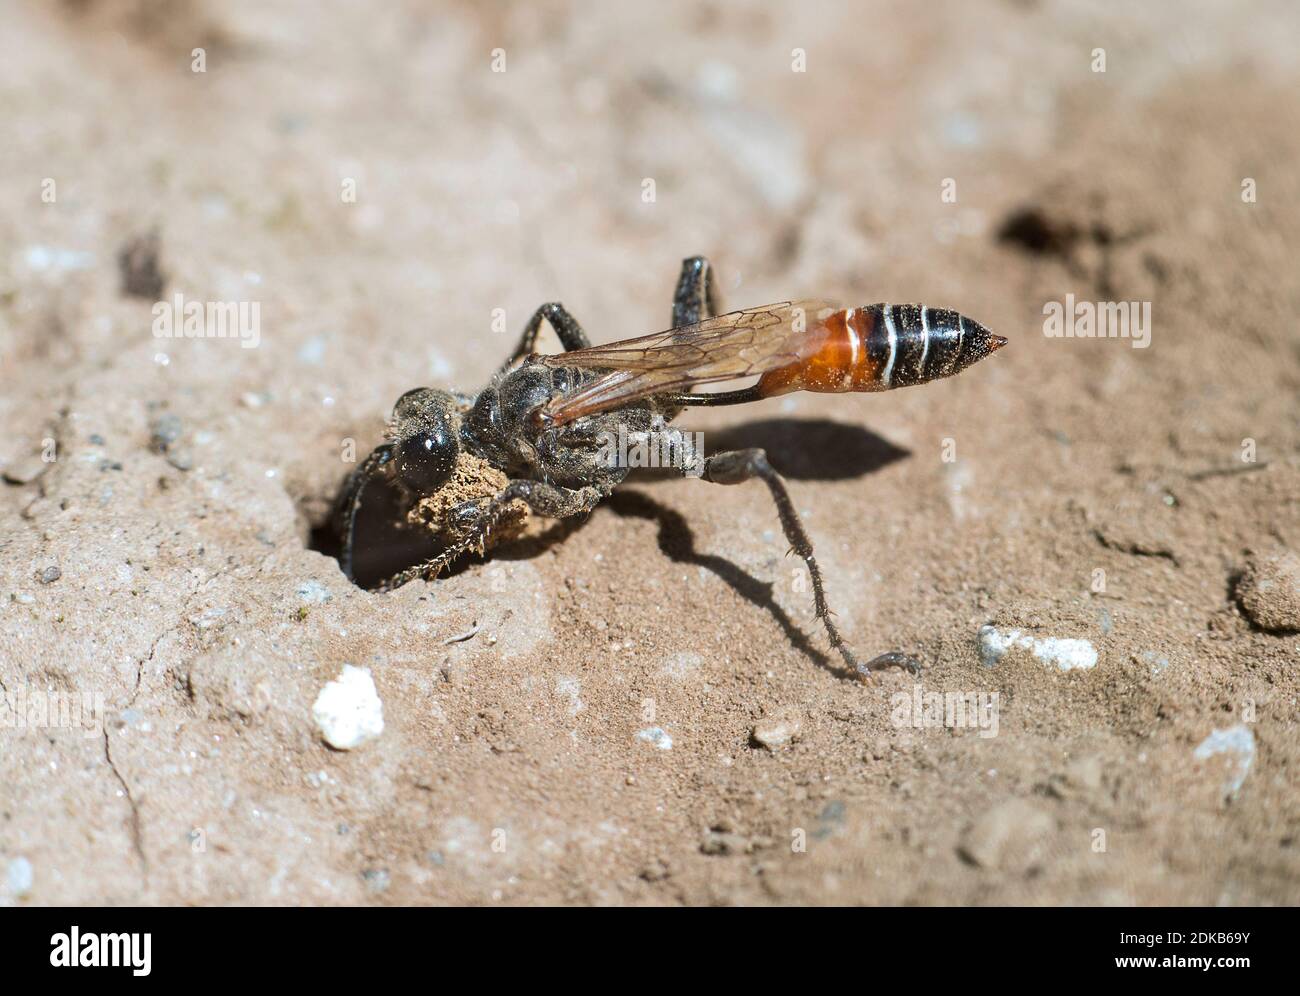 Femmina di Prionyx kirbii, una vespa filata, della famiglia Specidae, scavando un tunnel in terreno sabbioso, preparando vor nesting,Vallese, Svizzera Foto Stock